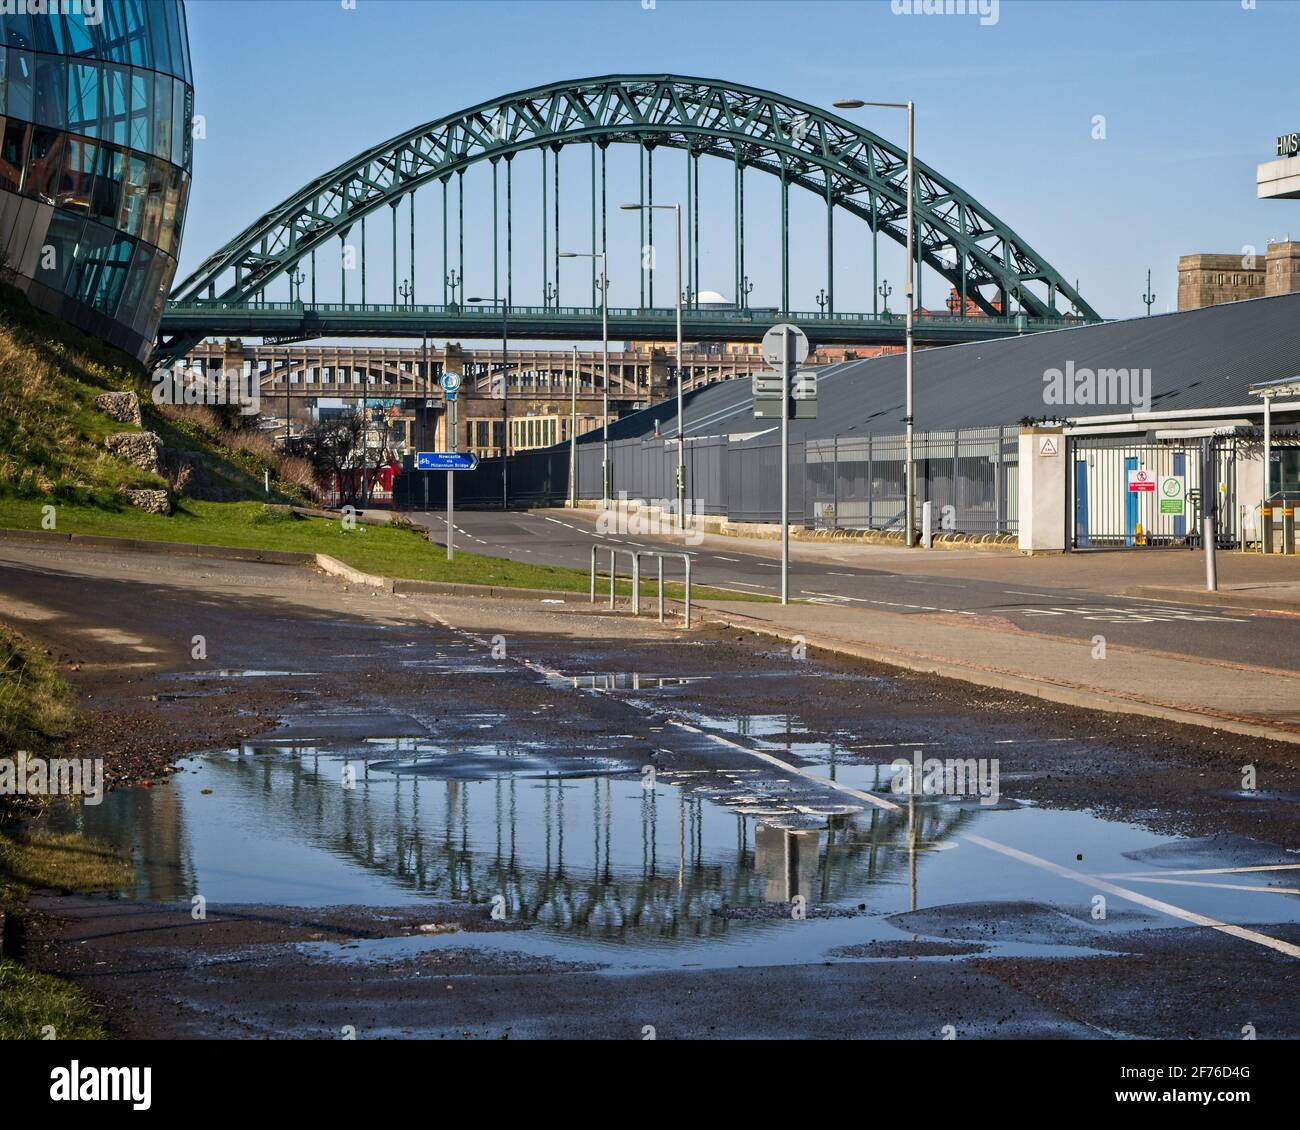 Die berühmte Newcastle Tyne Bridge und ihre Spiegelung wurden in einer Pfütze auf der Gateshead-Seite des Flusses Tyne festgehalten. Stockfoto